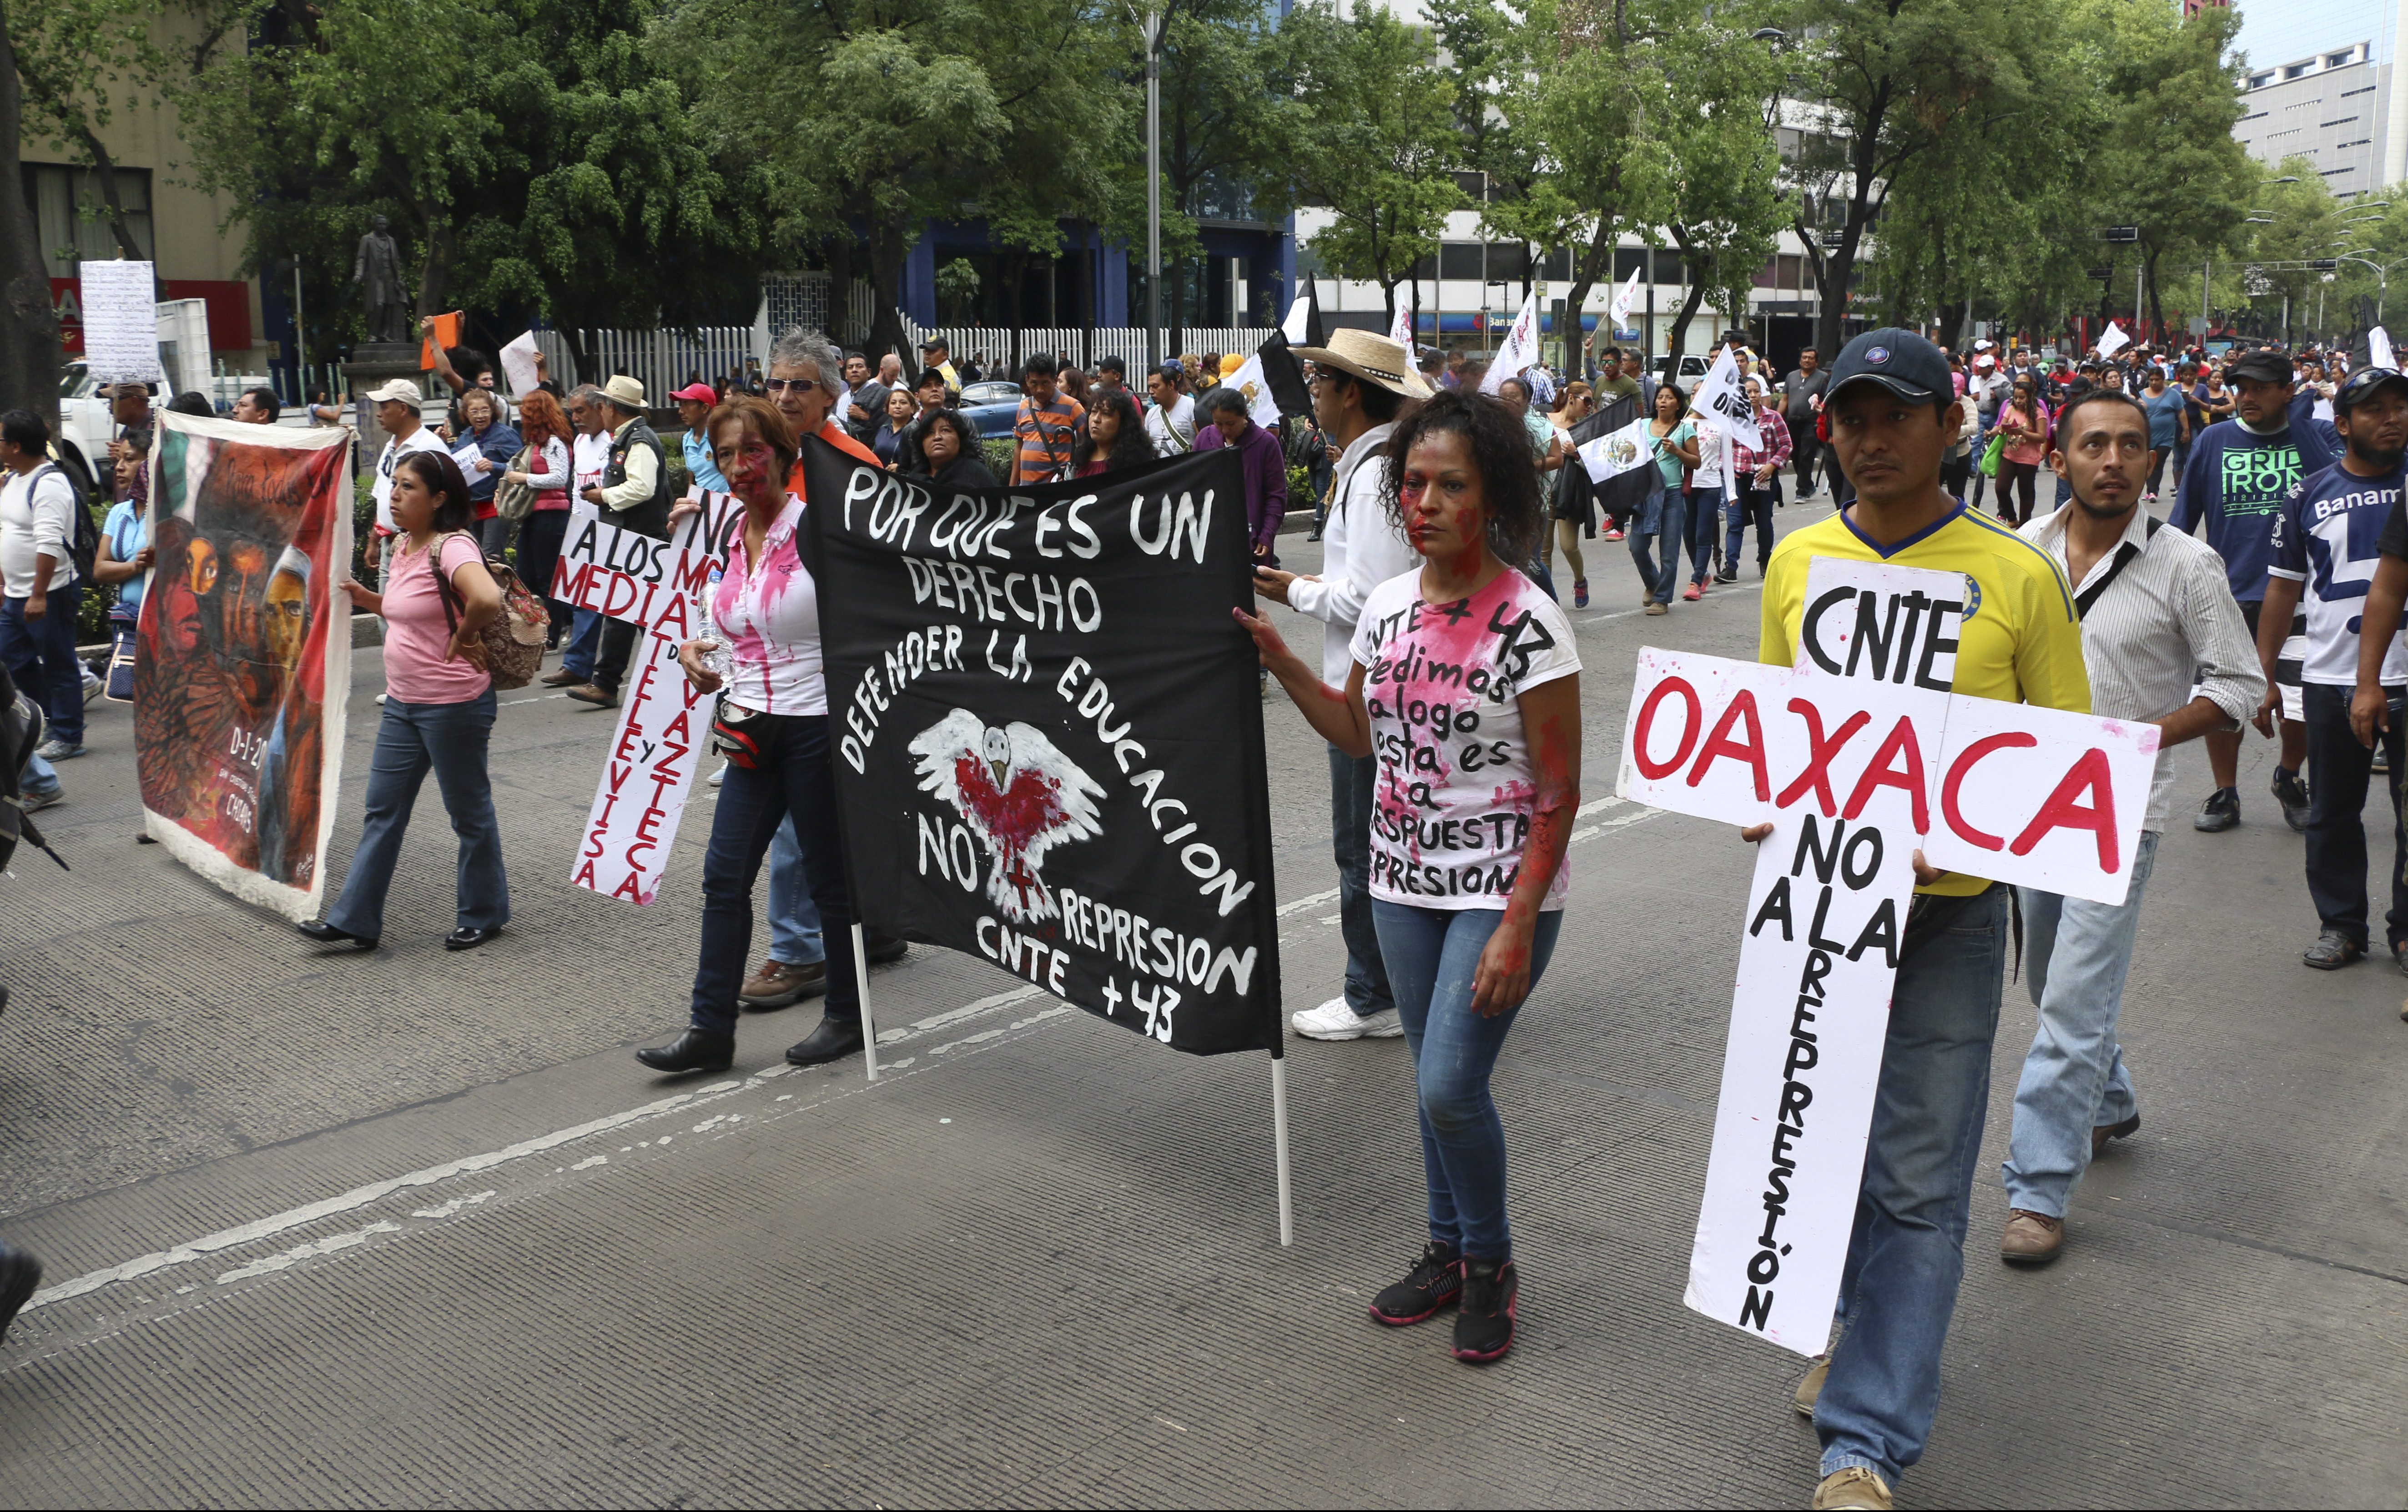  Entregan notificación de cese a 1239 maestros de Oaxaca